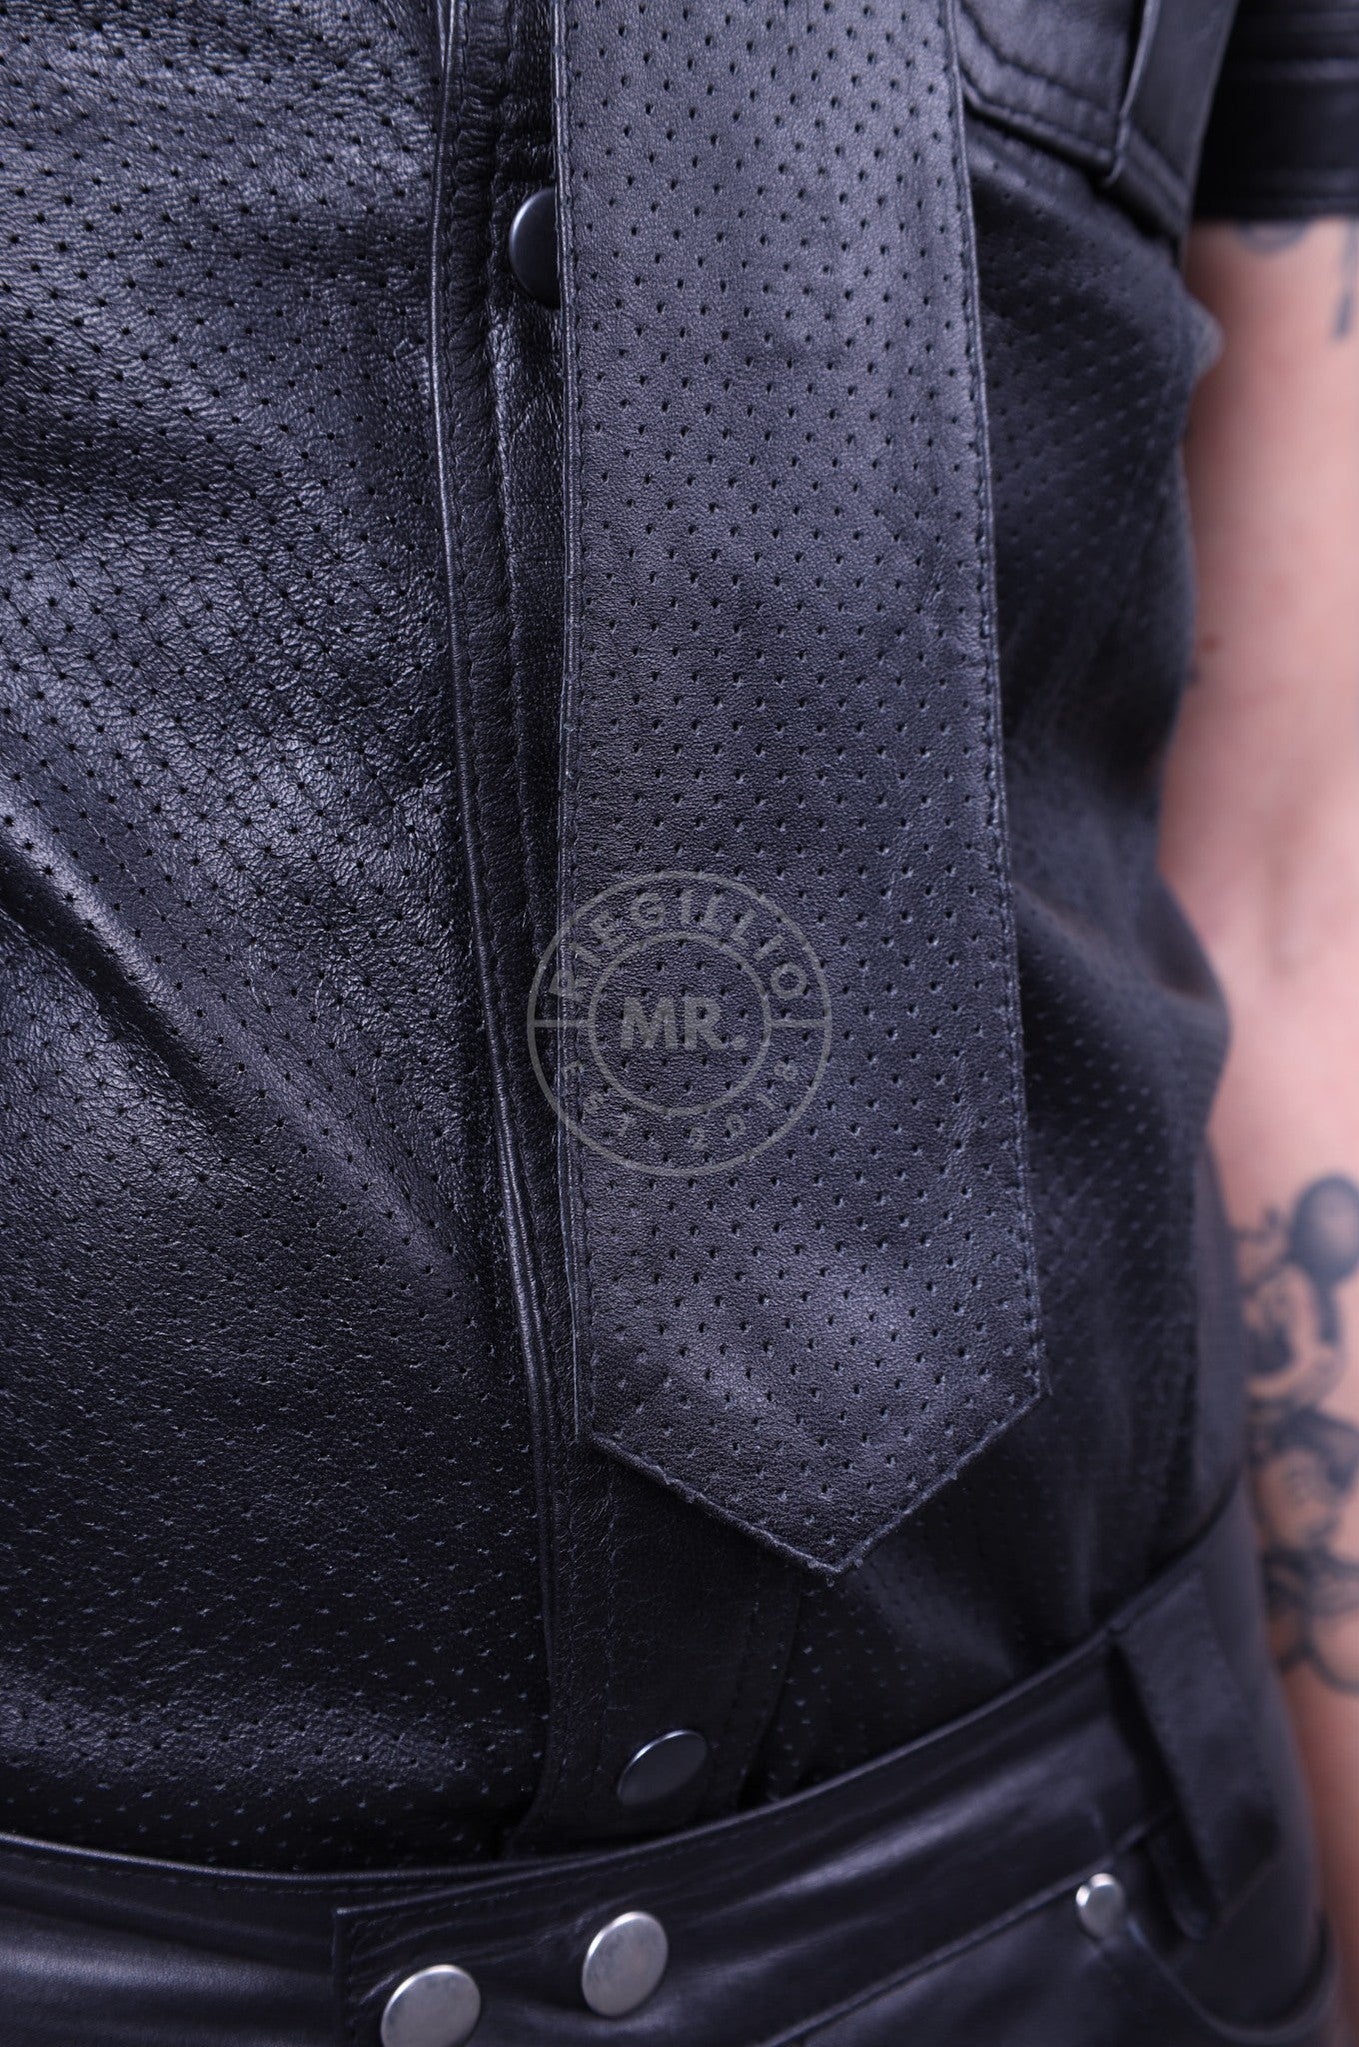 Black Leather Perforated Tie at MR. Riegillio